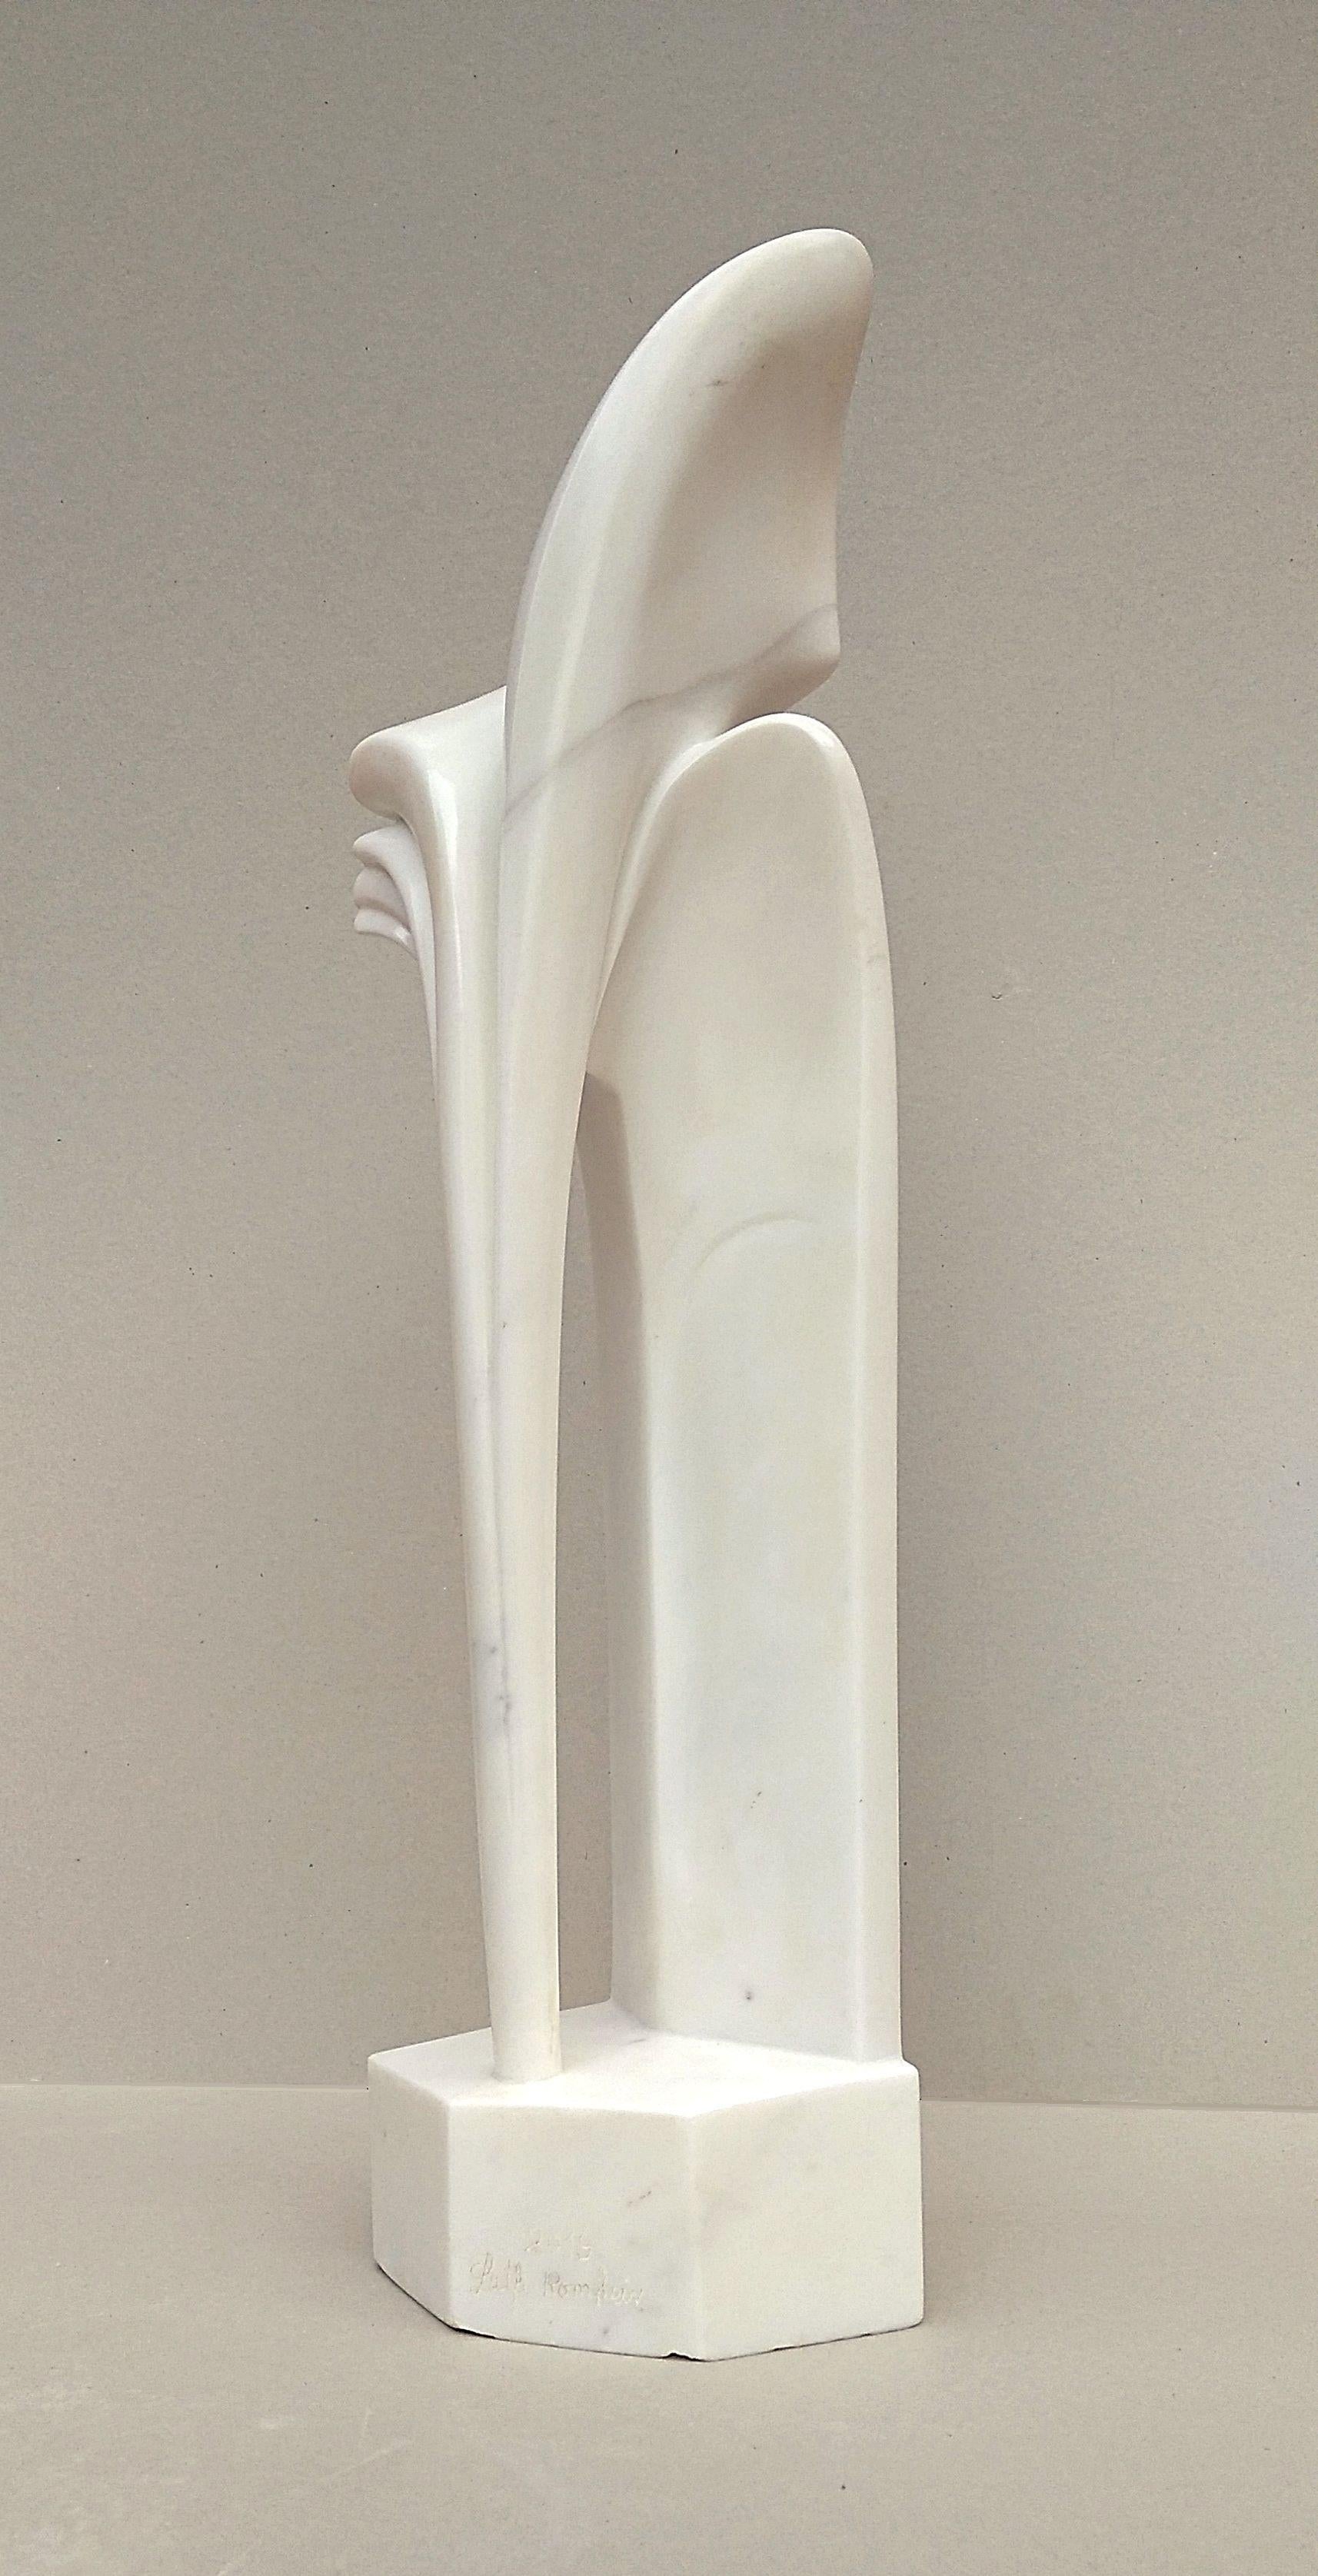 Diese Skulptur aus Carrare-Statuenmarmor in einem sehr reinen Weiß mit leicht gefärbten Adern stammt von Lutfi Romhein.

Lutfi Romhein, Absolvent der Akademie der Schönen Künste in Carrare (Italien), ist ein Bildhauer syrischer Herkunft, der seit